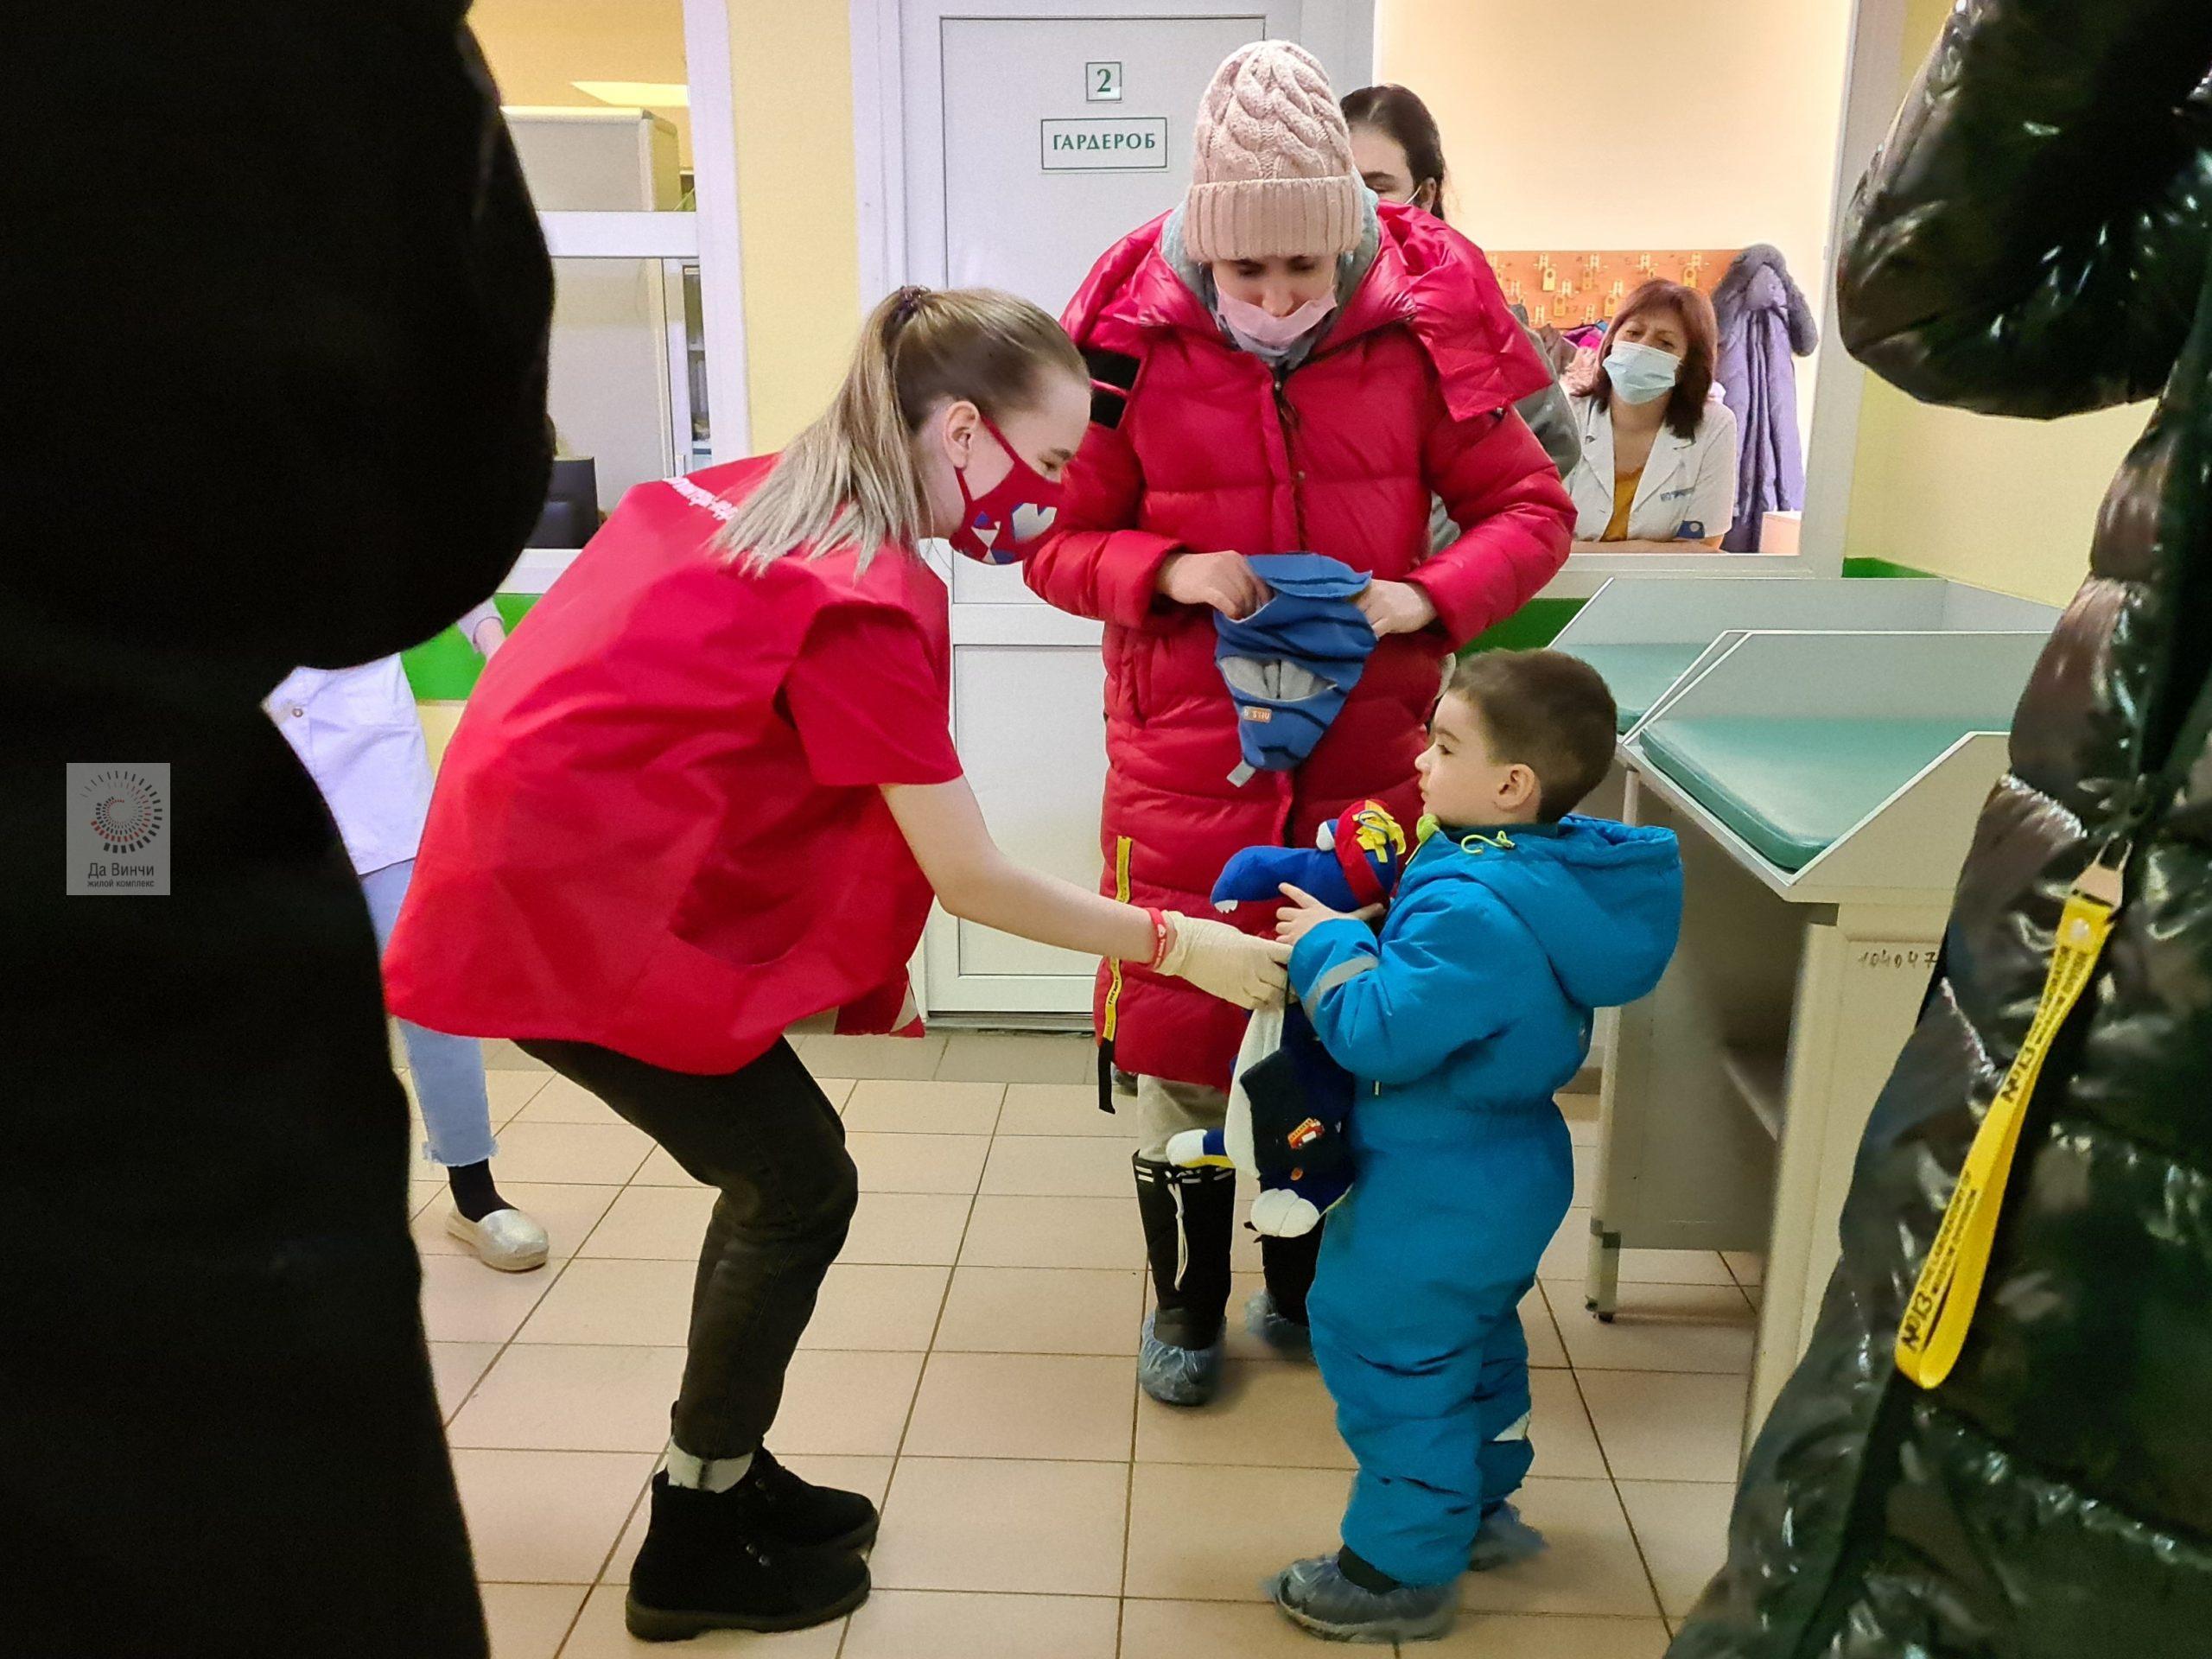 Волонтеры раздали детям 100 мягких дракончиков в Одинцовских поликлиниках